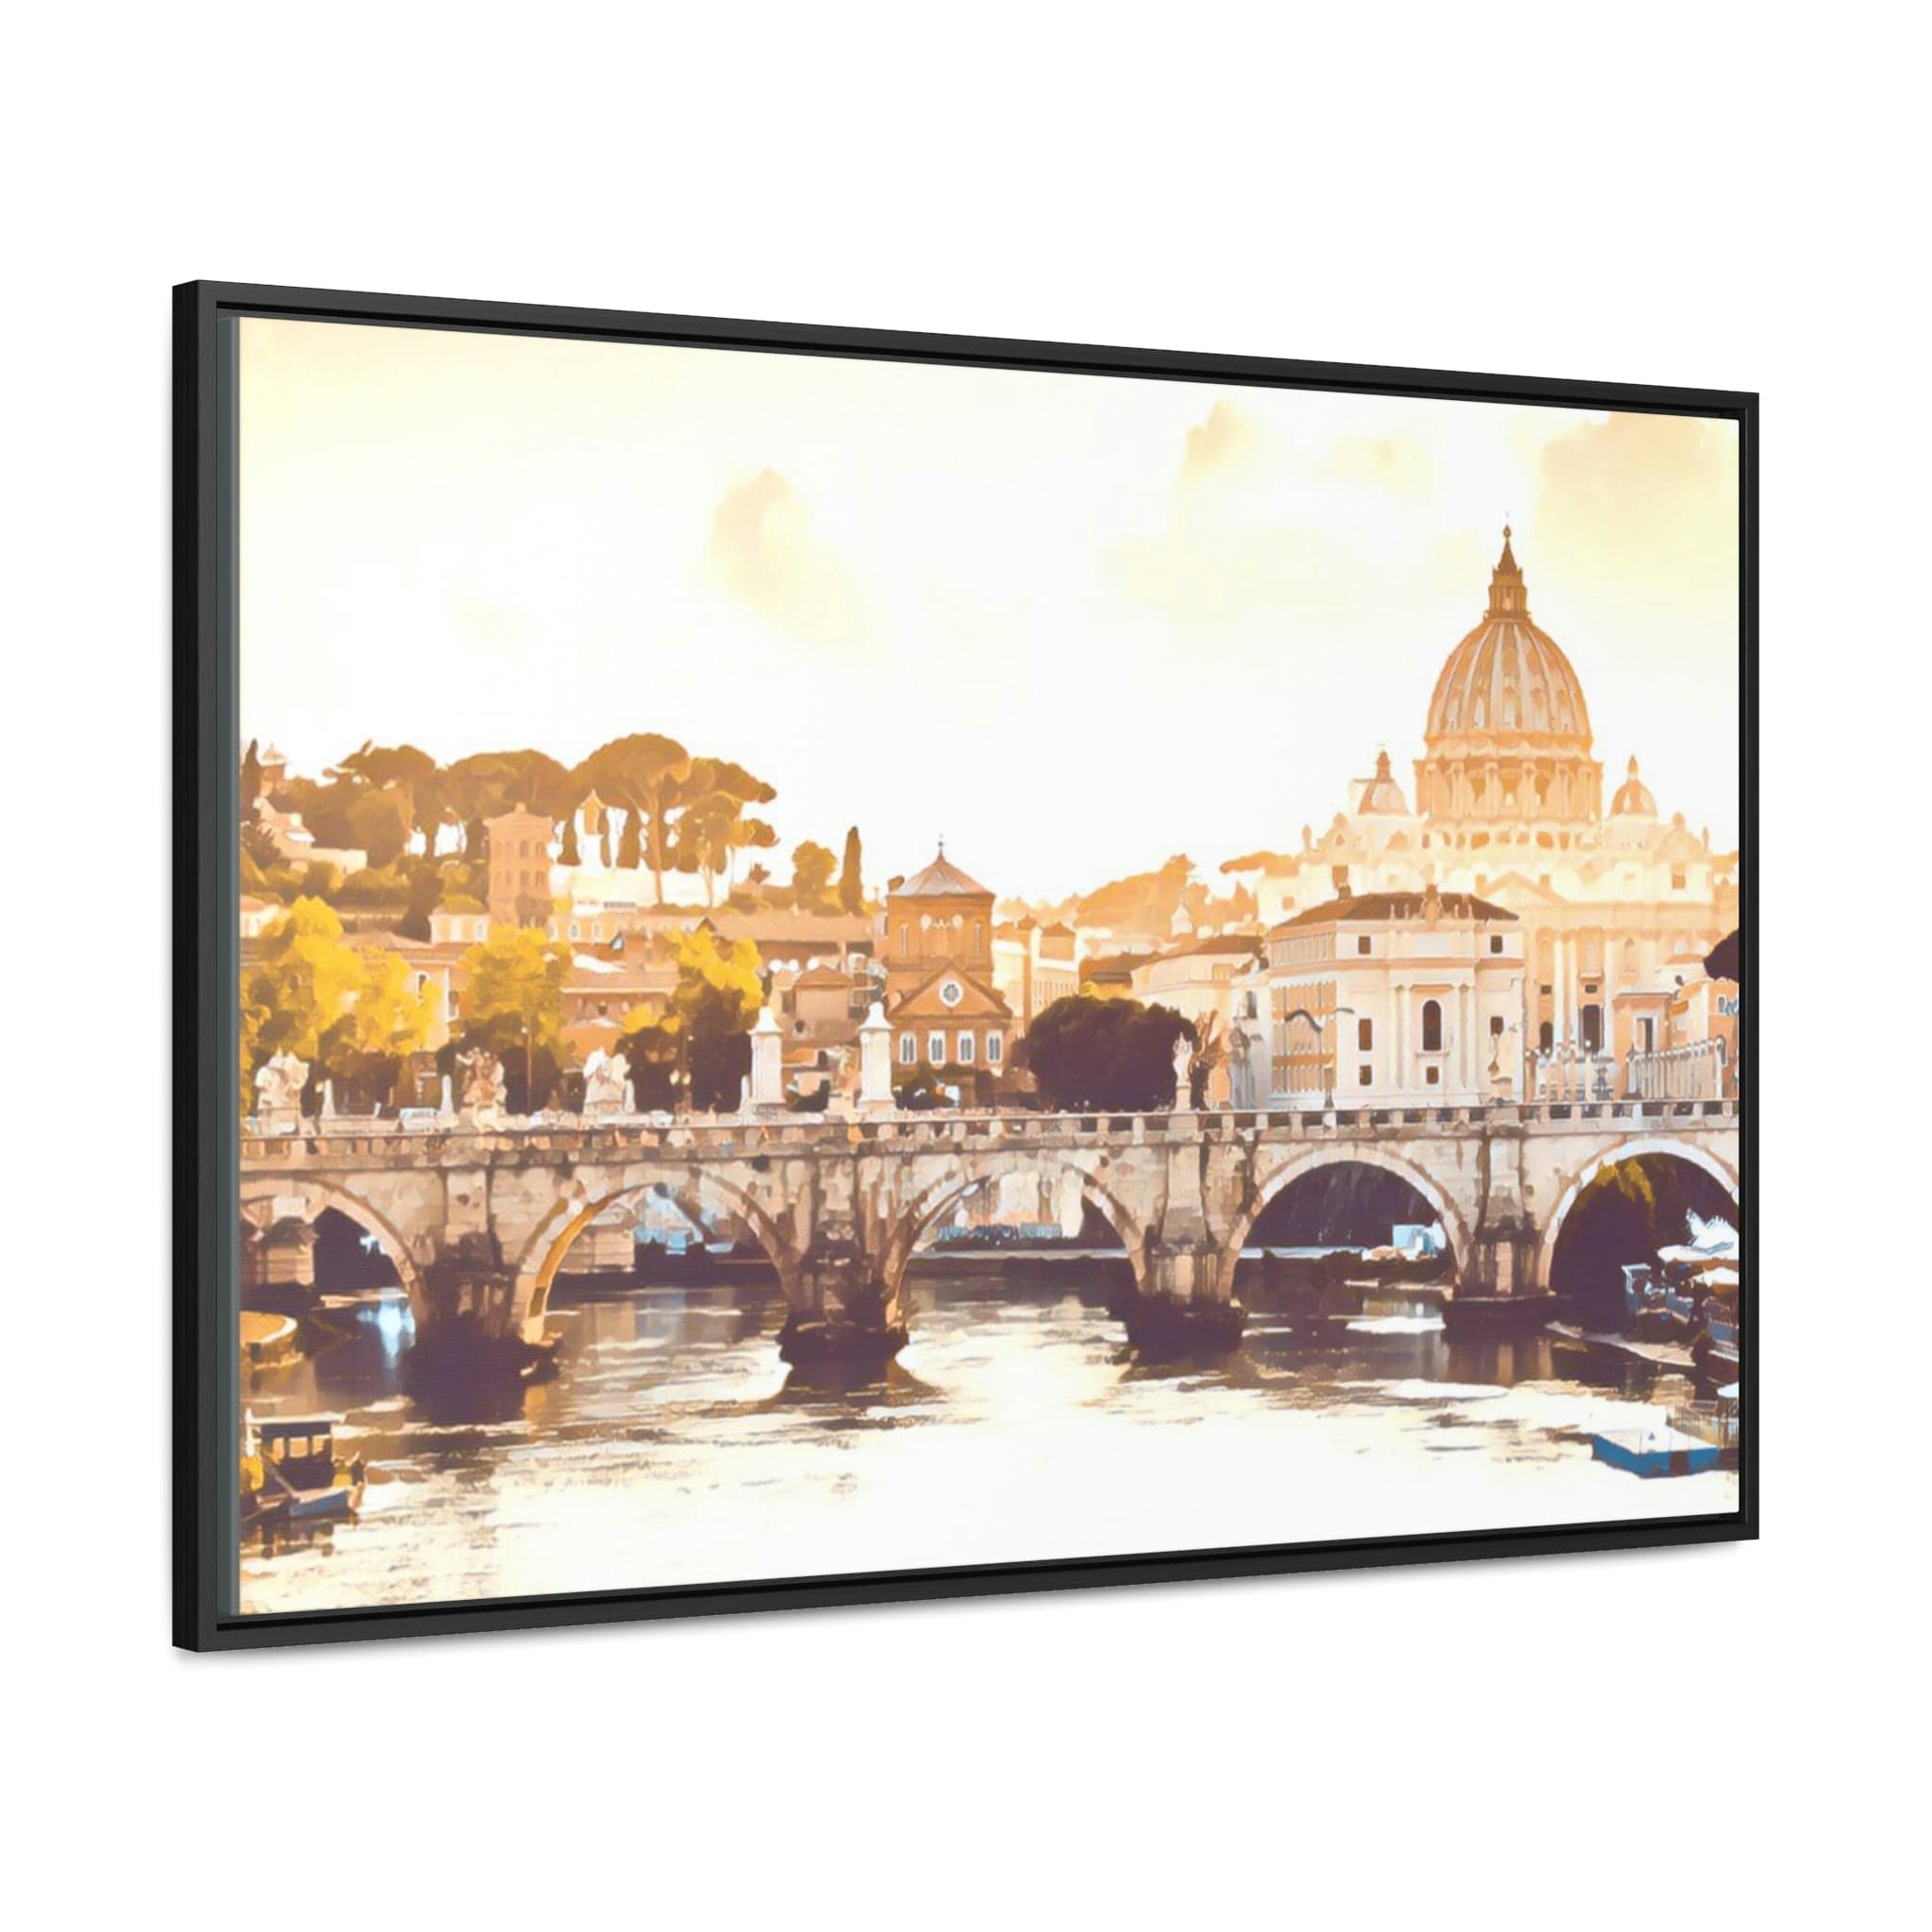 Printify Canvas 36″ x 24″ / Black / Premium Gallery Wraps (1.25″) Gallery Canvas Wraps, Horizontal Frame